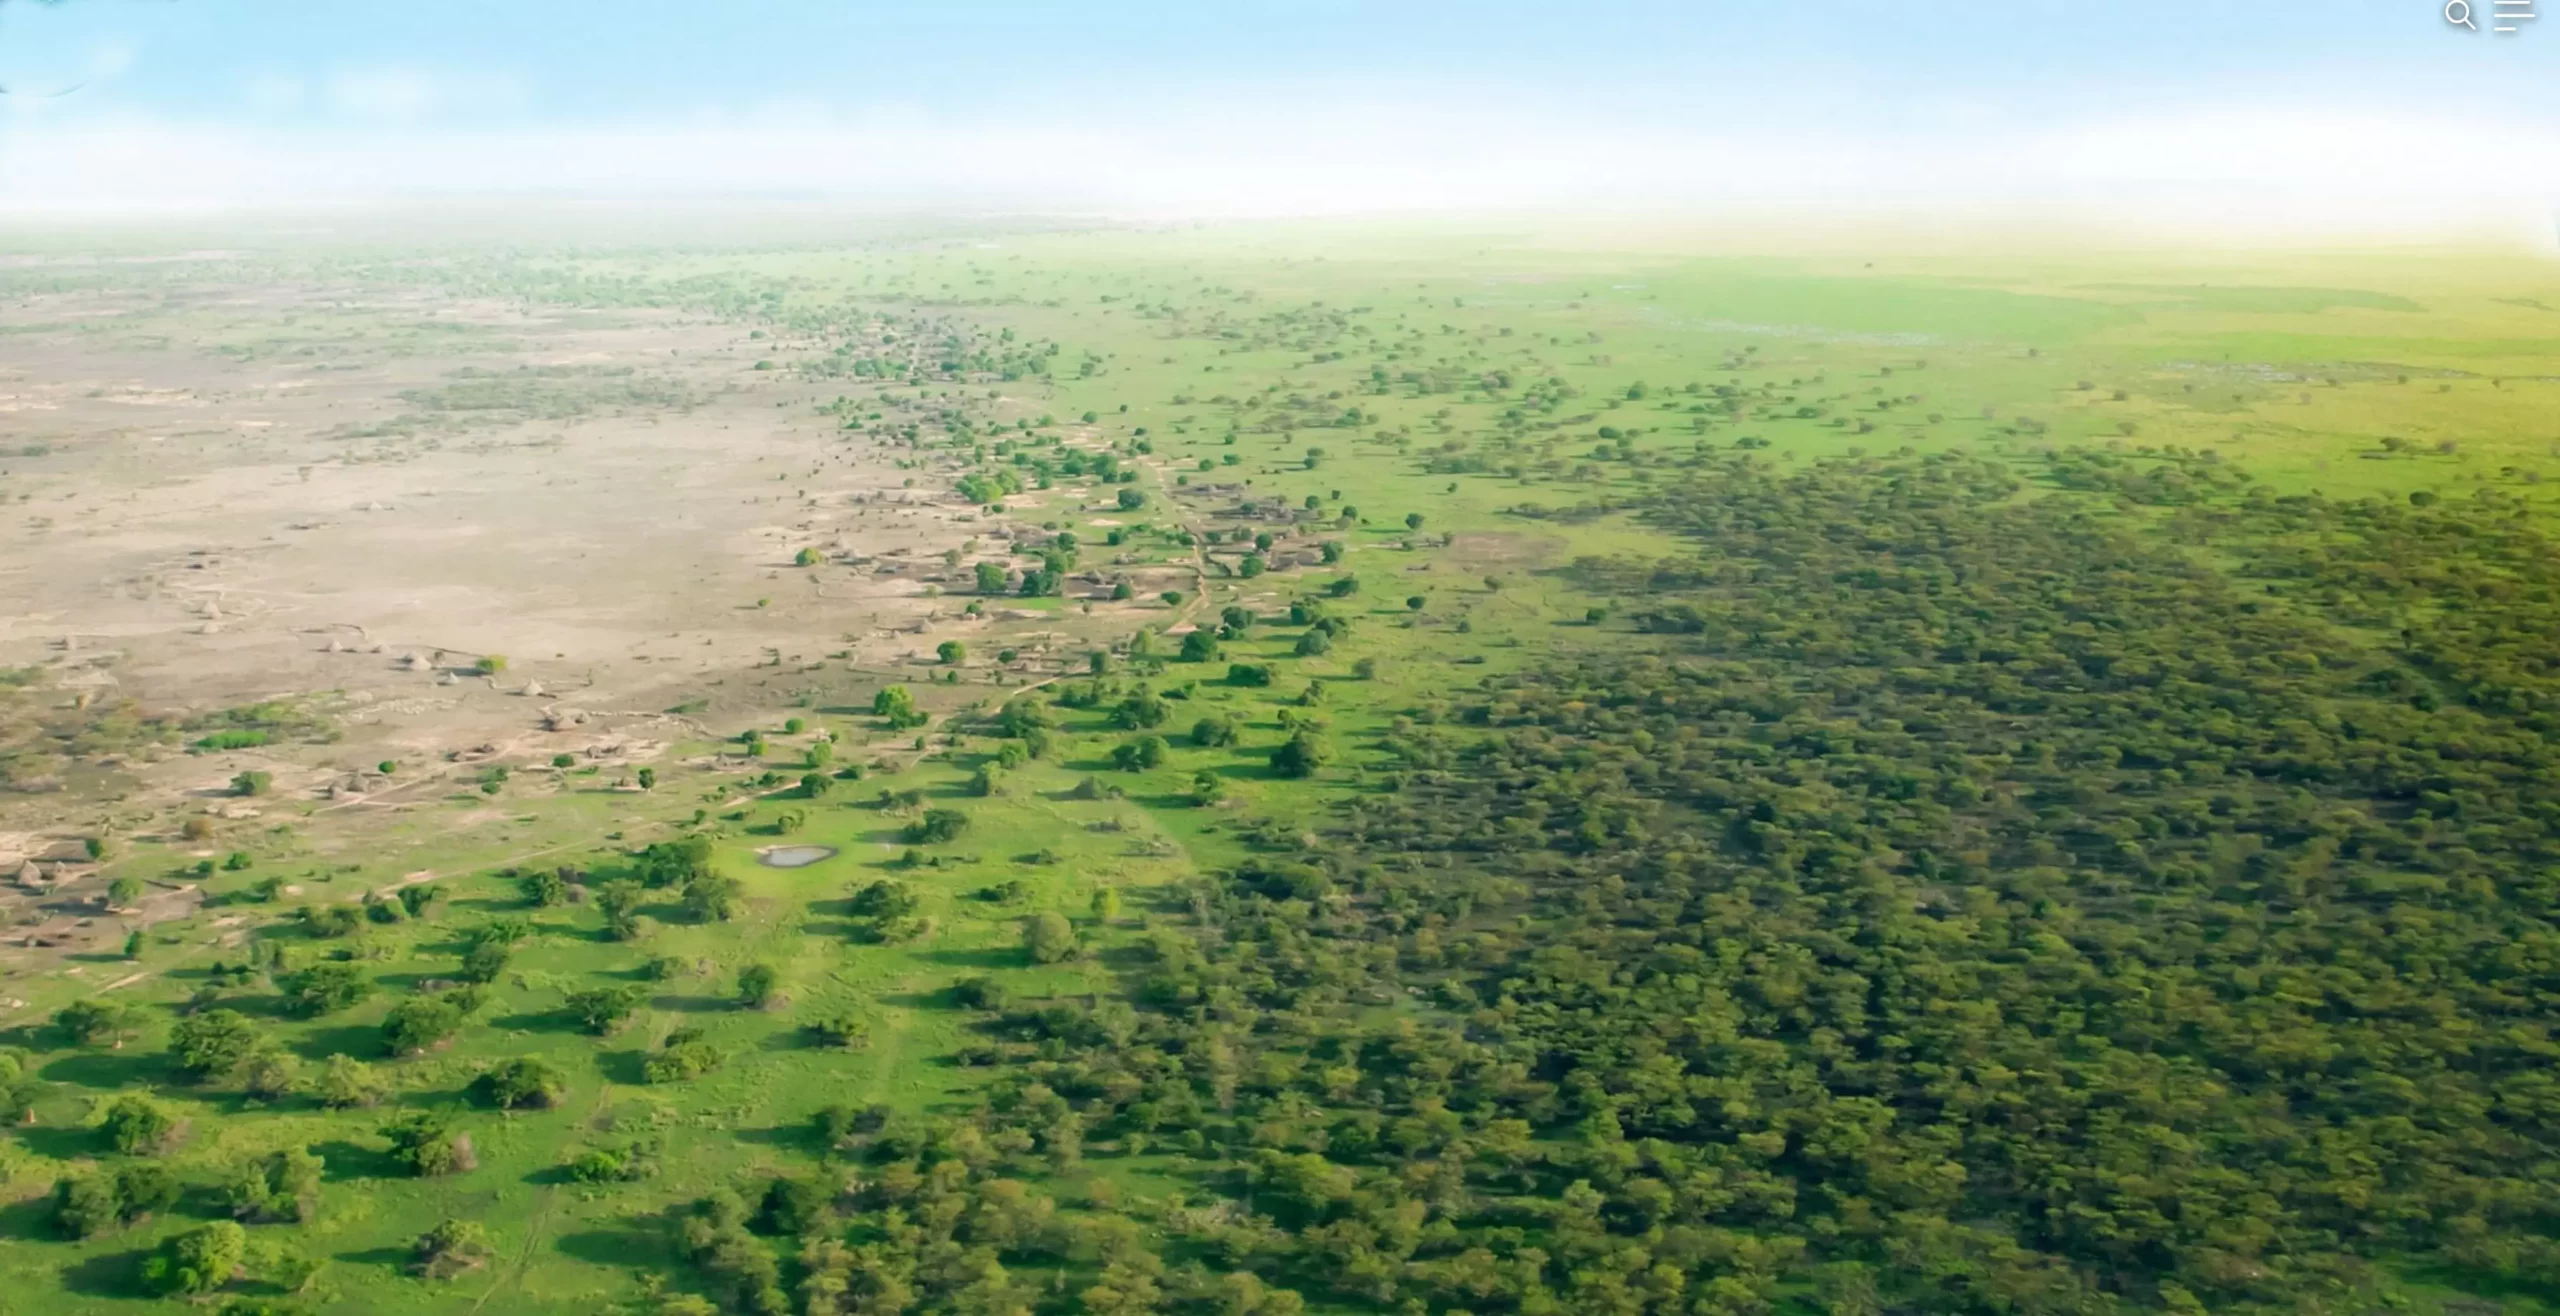 Drought, conflict hamper Sahel’s green wall